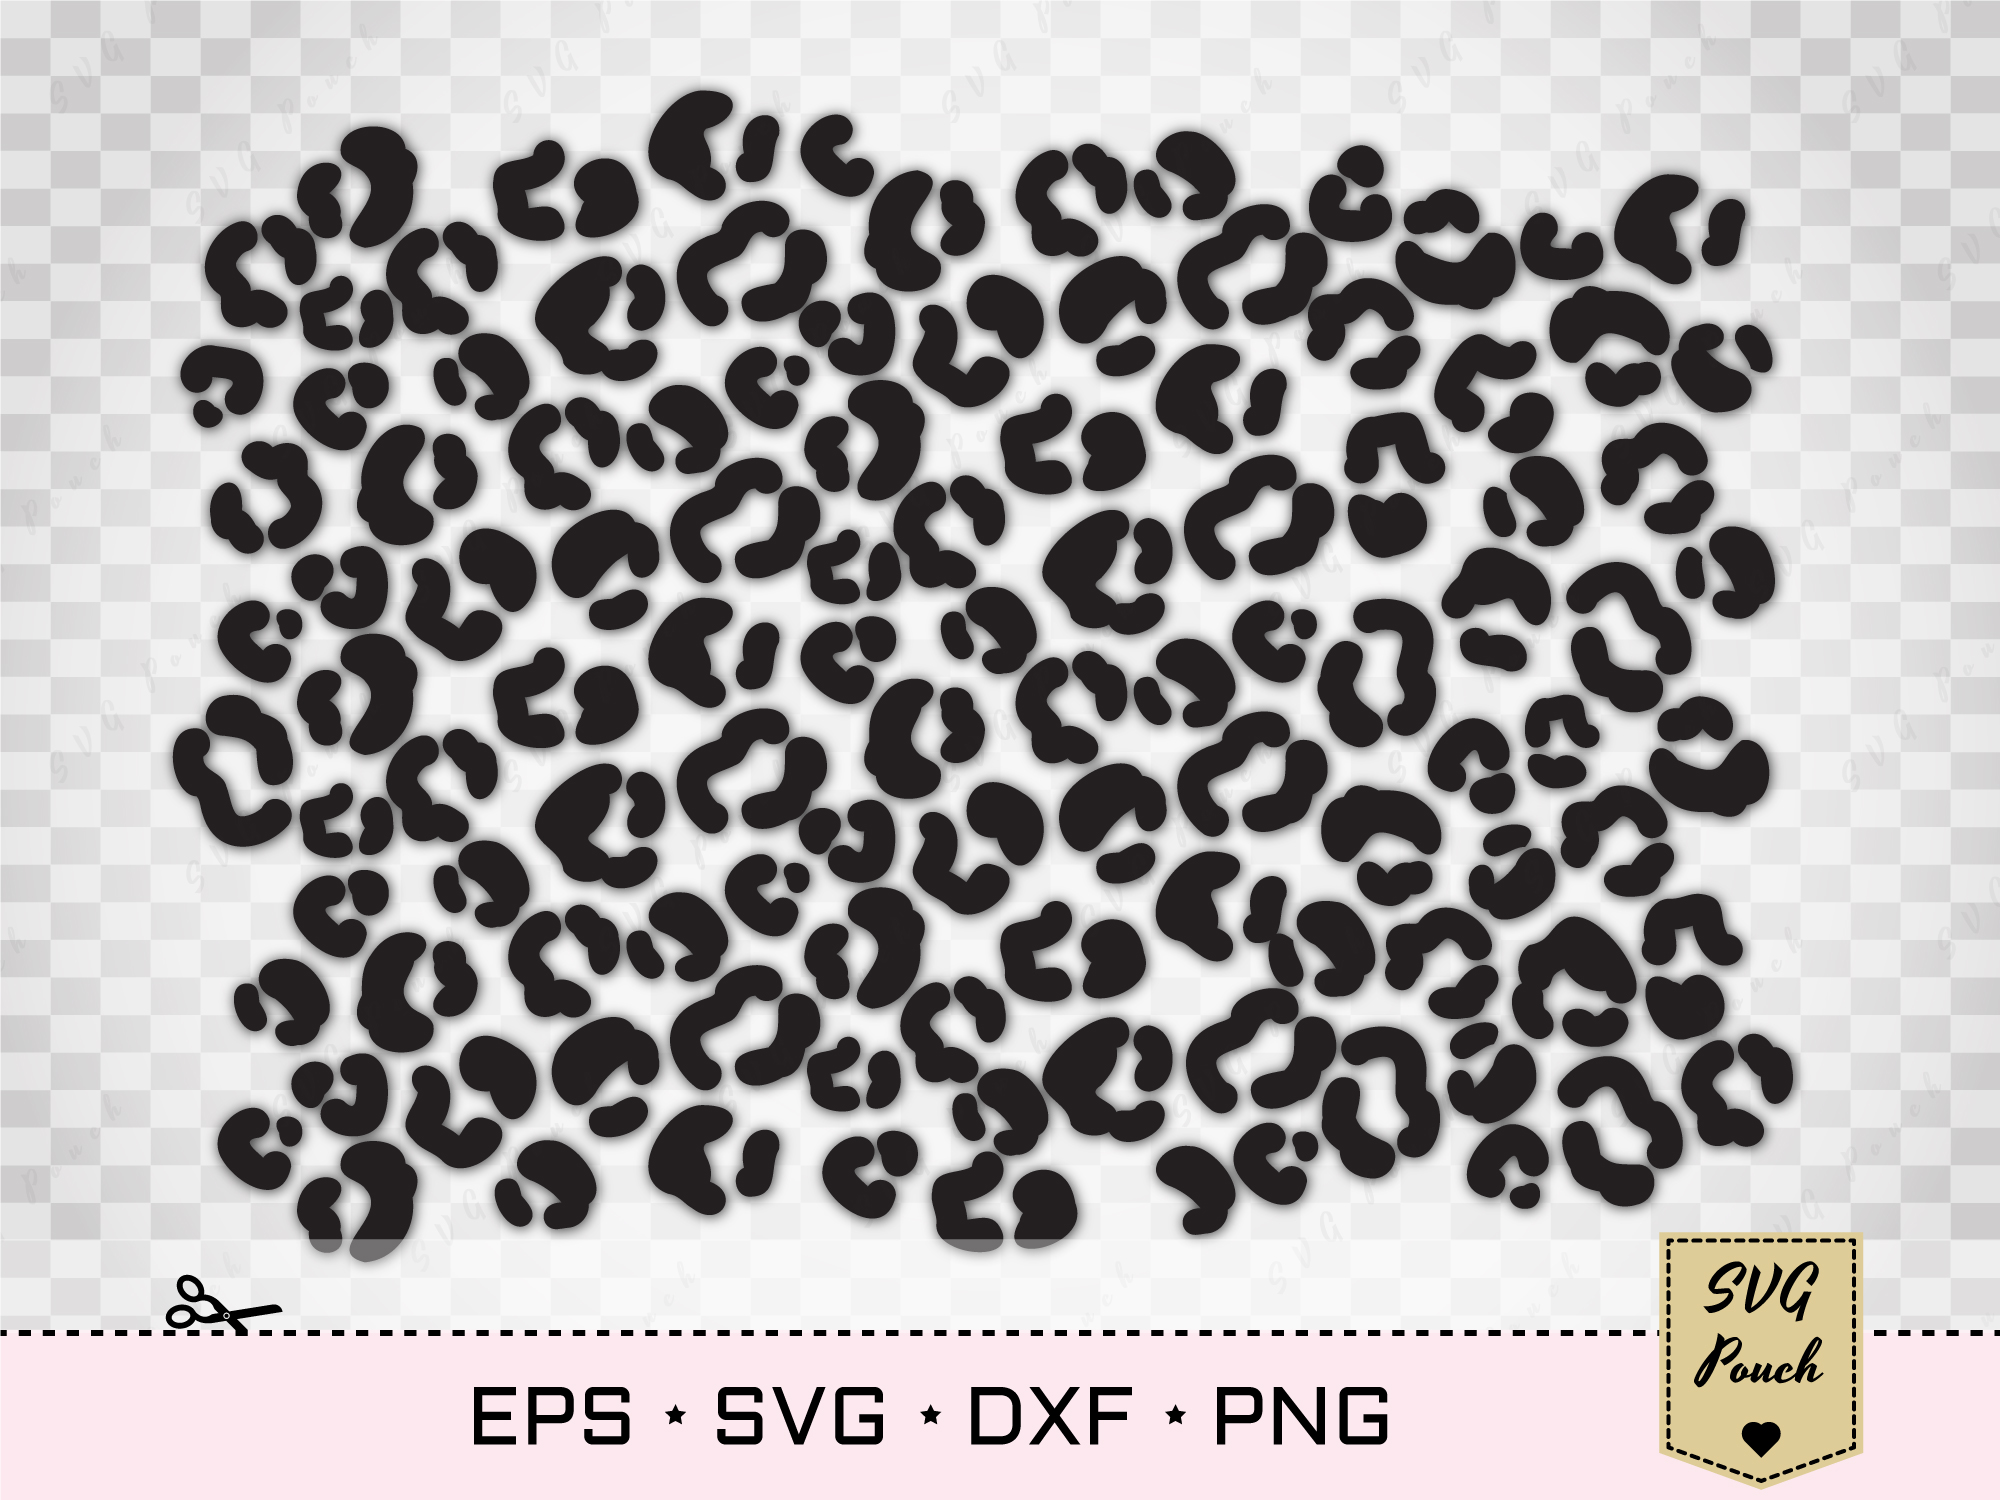 Download Leopard print SVG